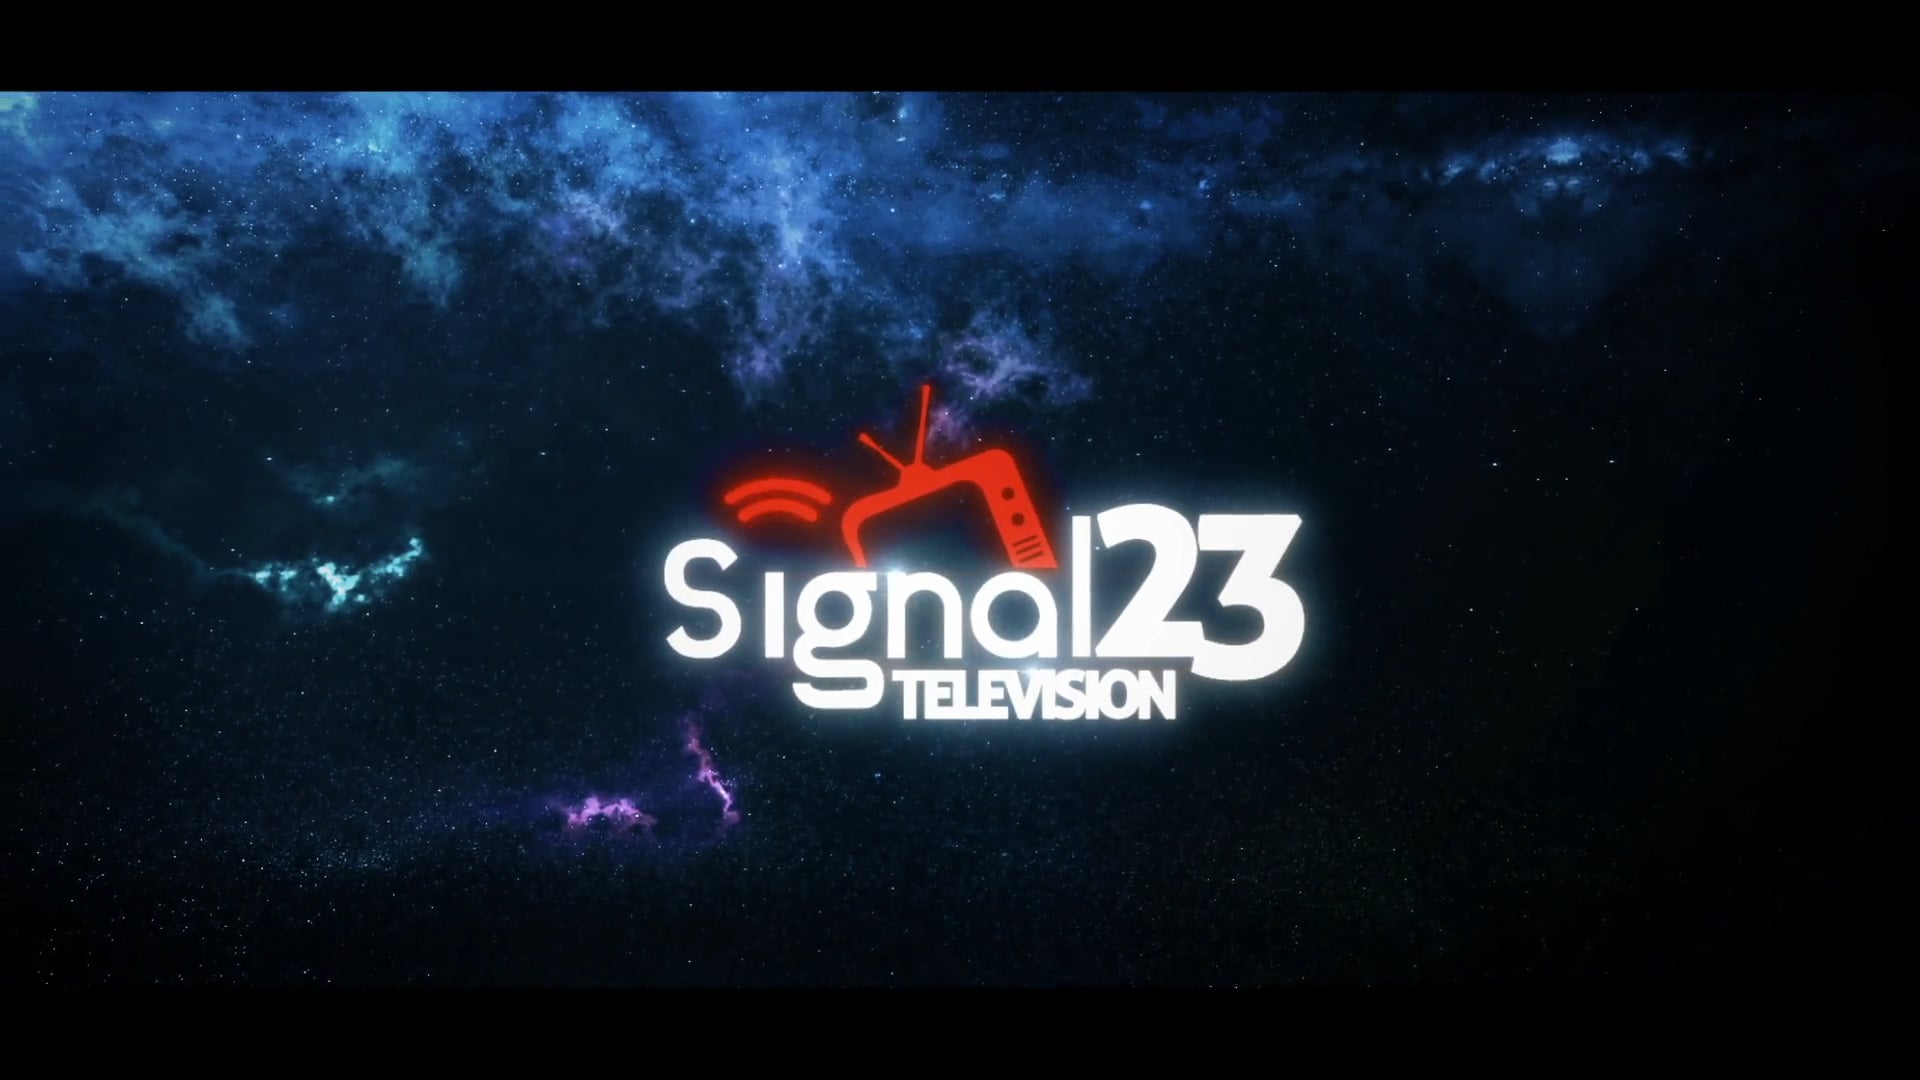 signal 23 tv roku